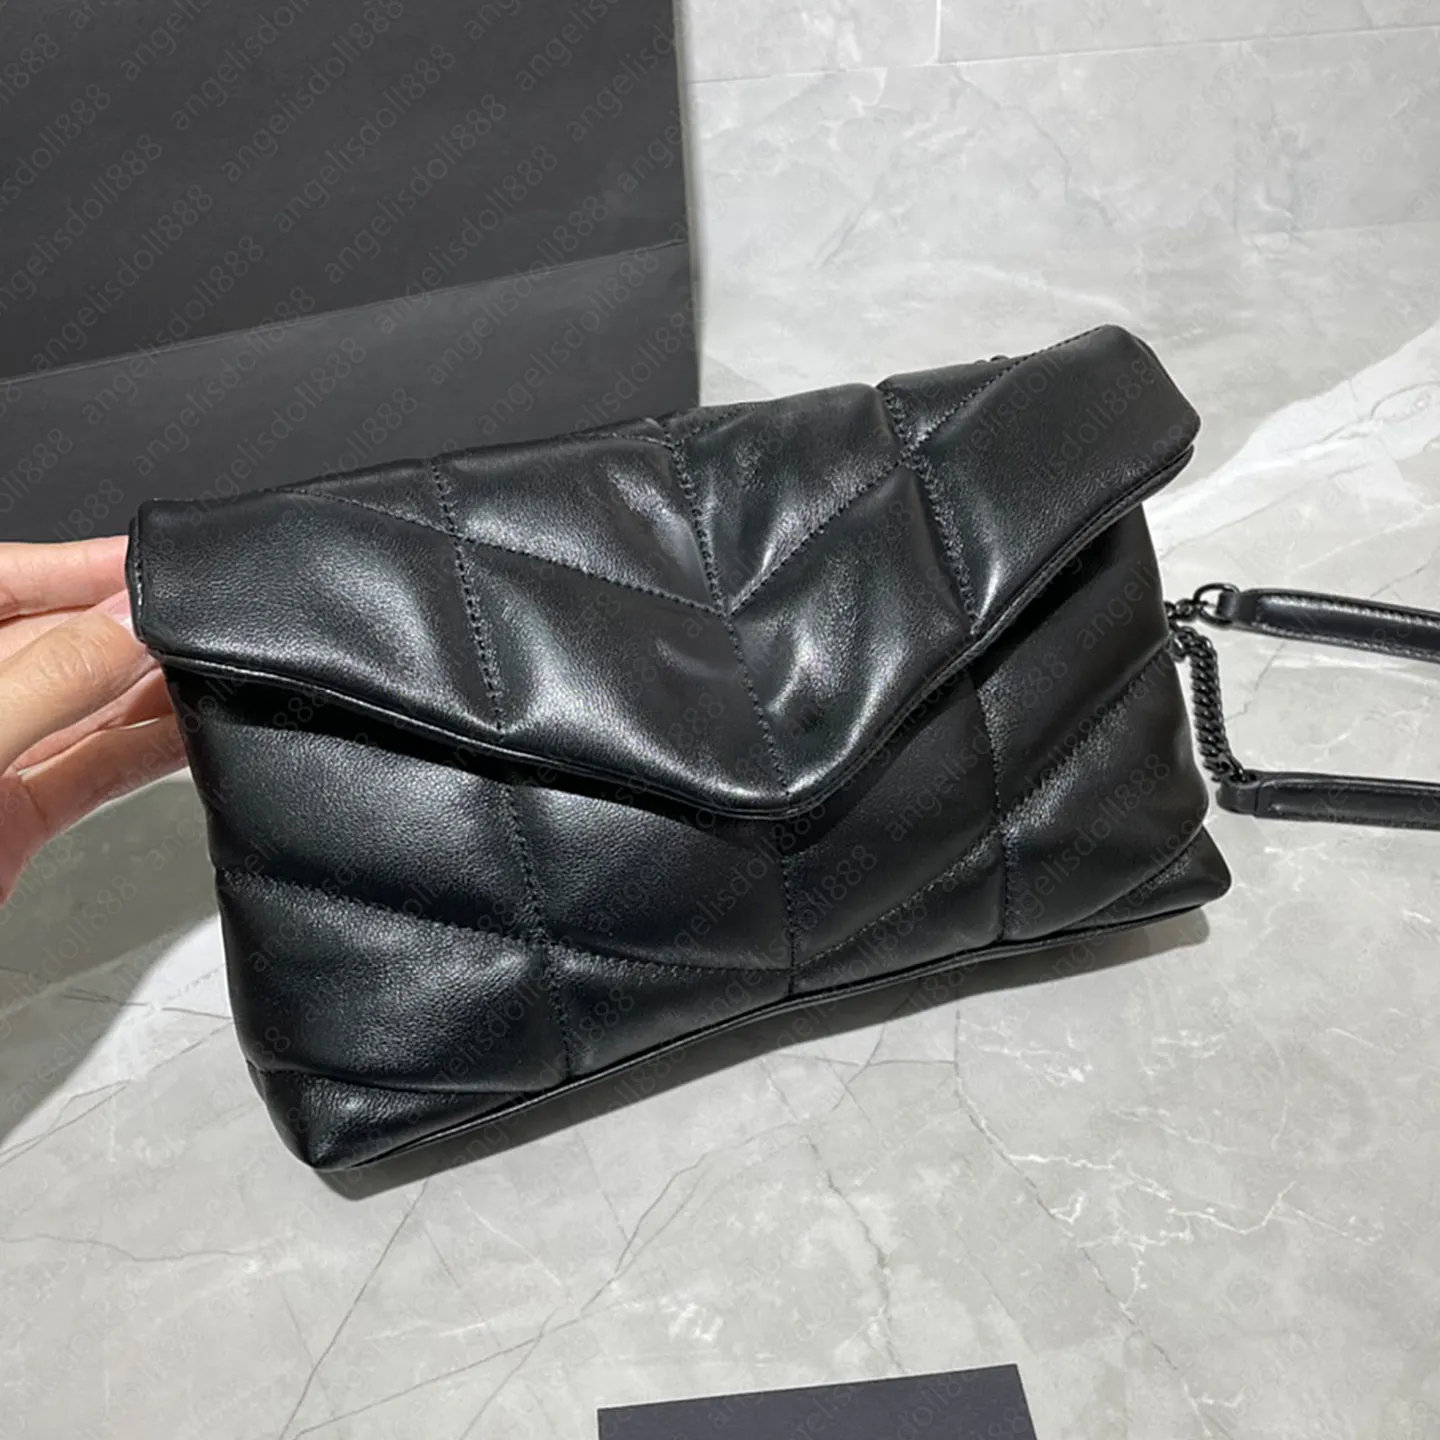 Lüks Tasarımcılar Çanta Mini Loul0u Pufe Top Qaulity Kadın Çanta Kapitone Siyah Kuzu Derisi Yumuşak Hakiki Deri Zincir Omuz Messenger Zarf Çantası